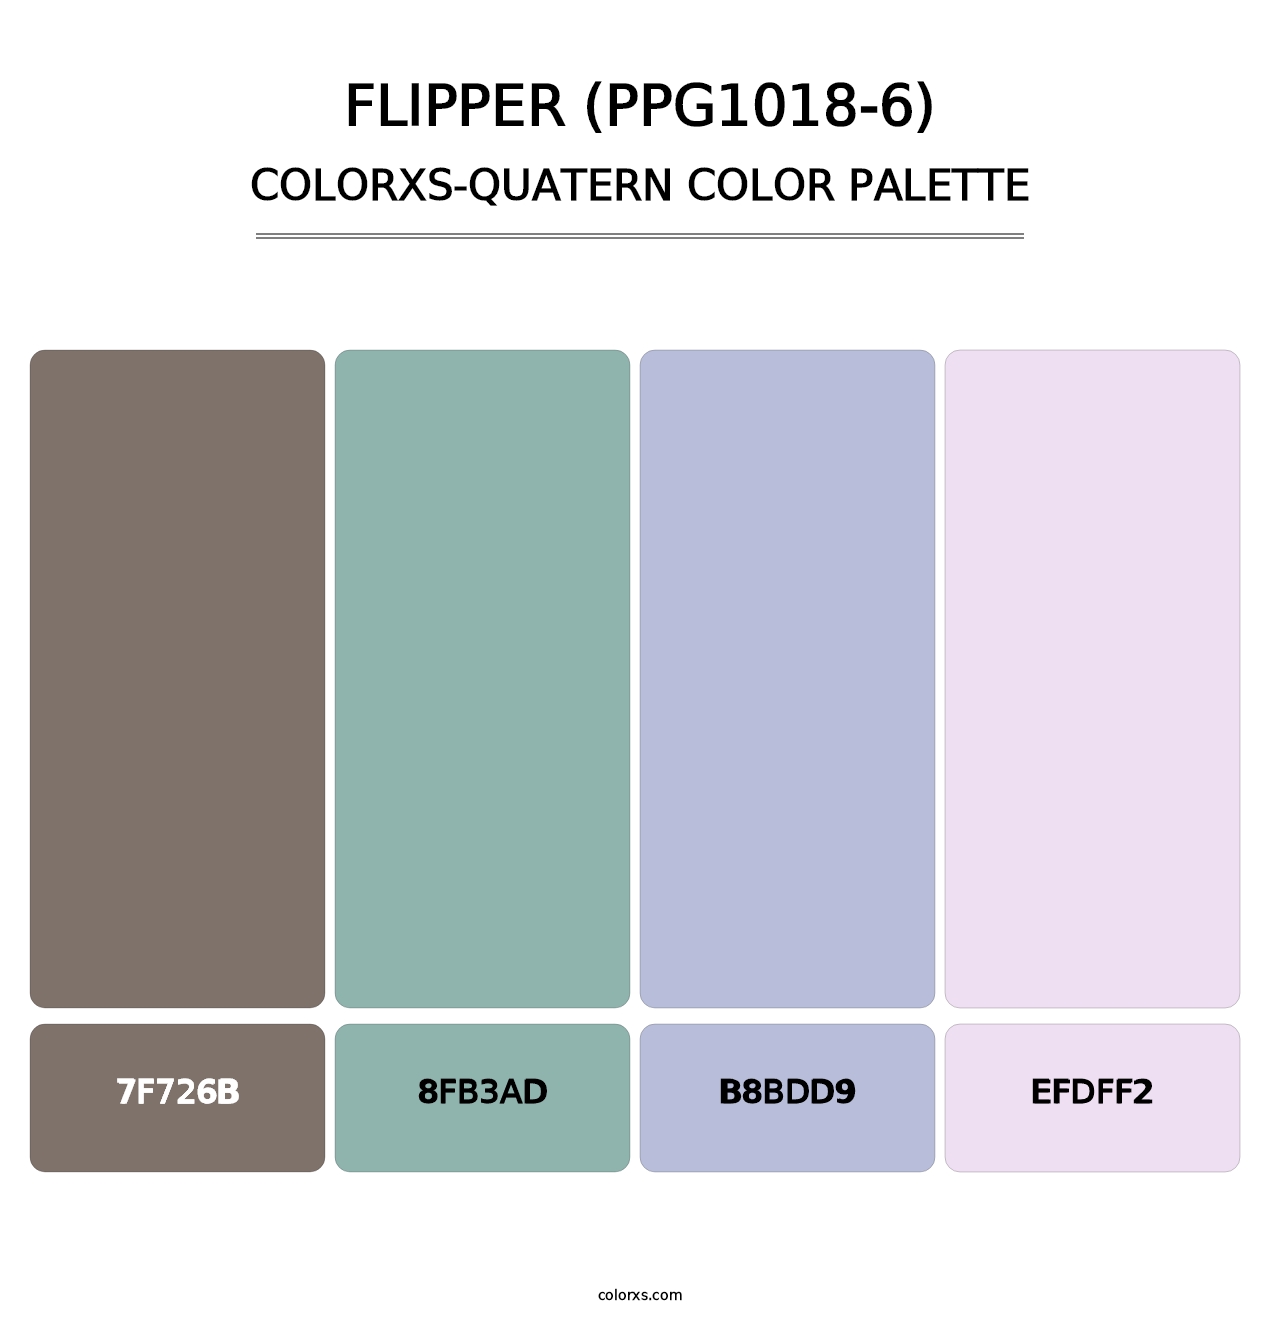 Flipper (PPG1018-6) - Colorxs Quatern Palette